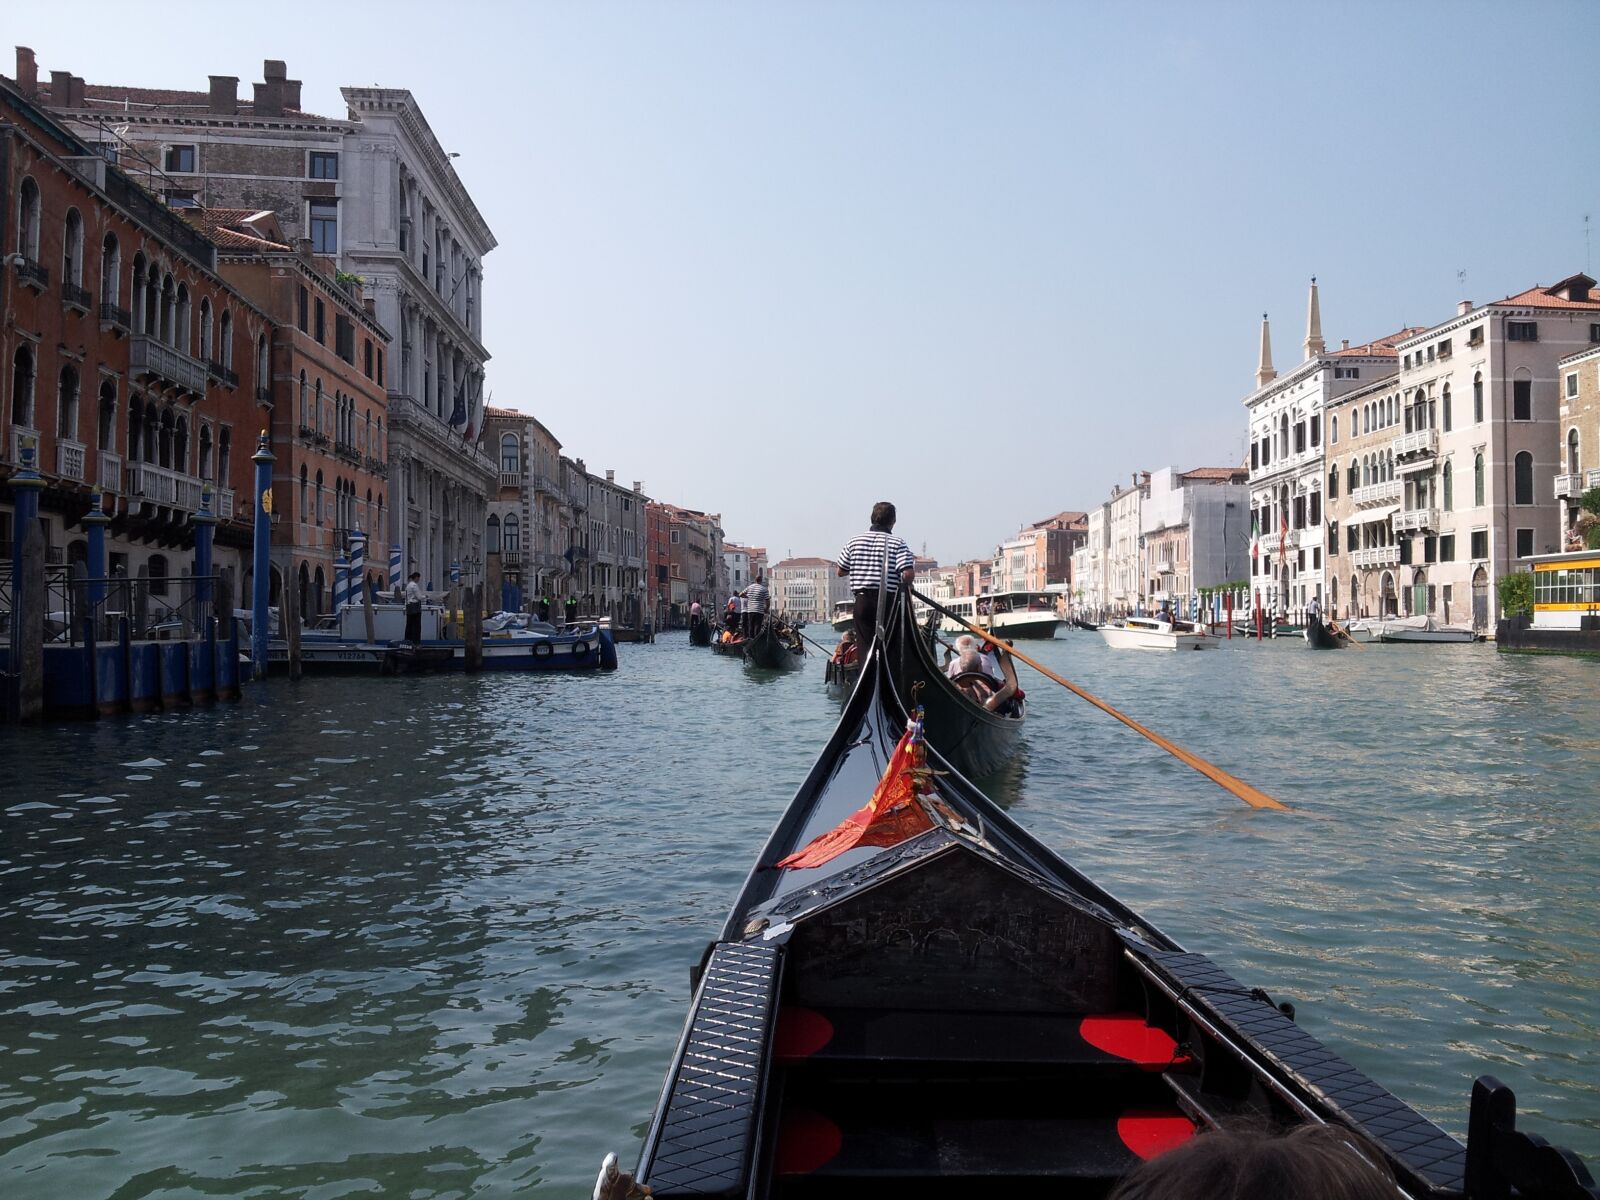 Samsung Galaxy Note sample photo. Venice, italy, gondola photography